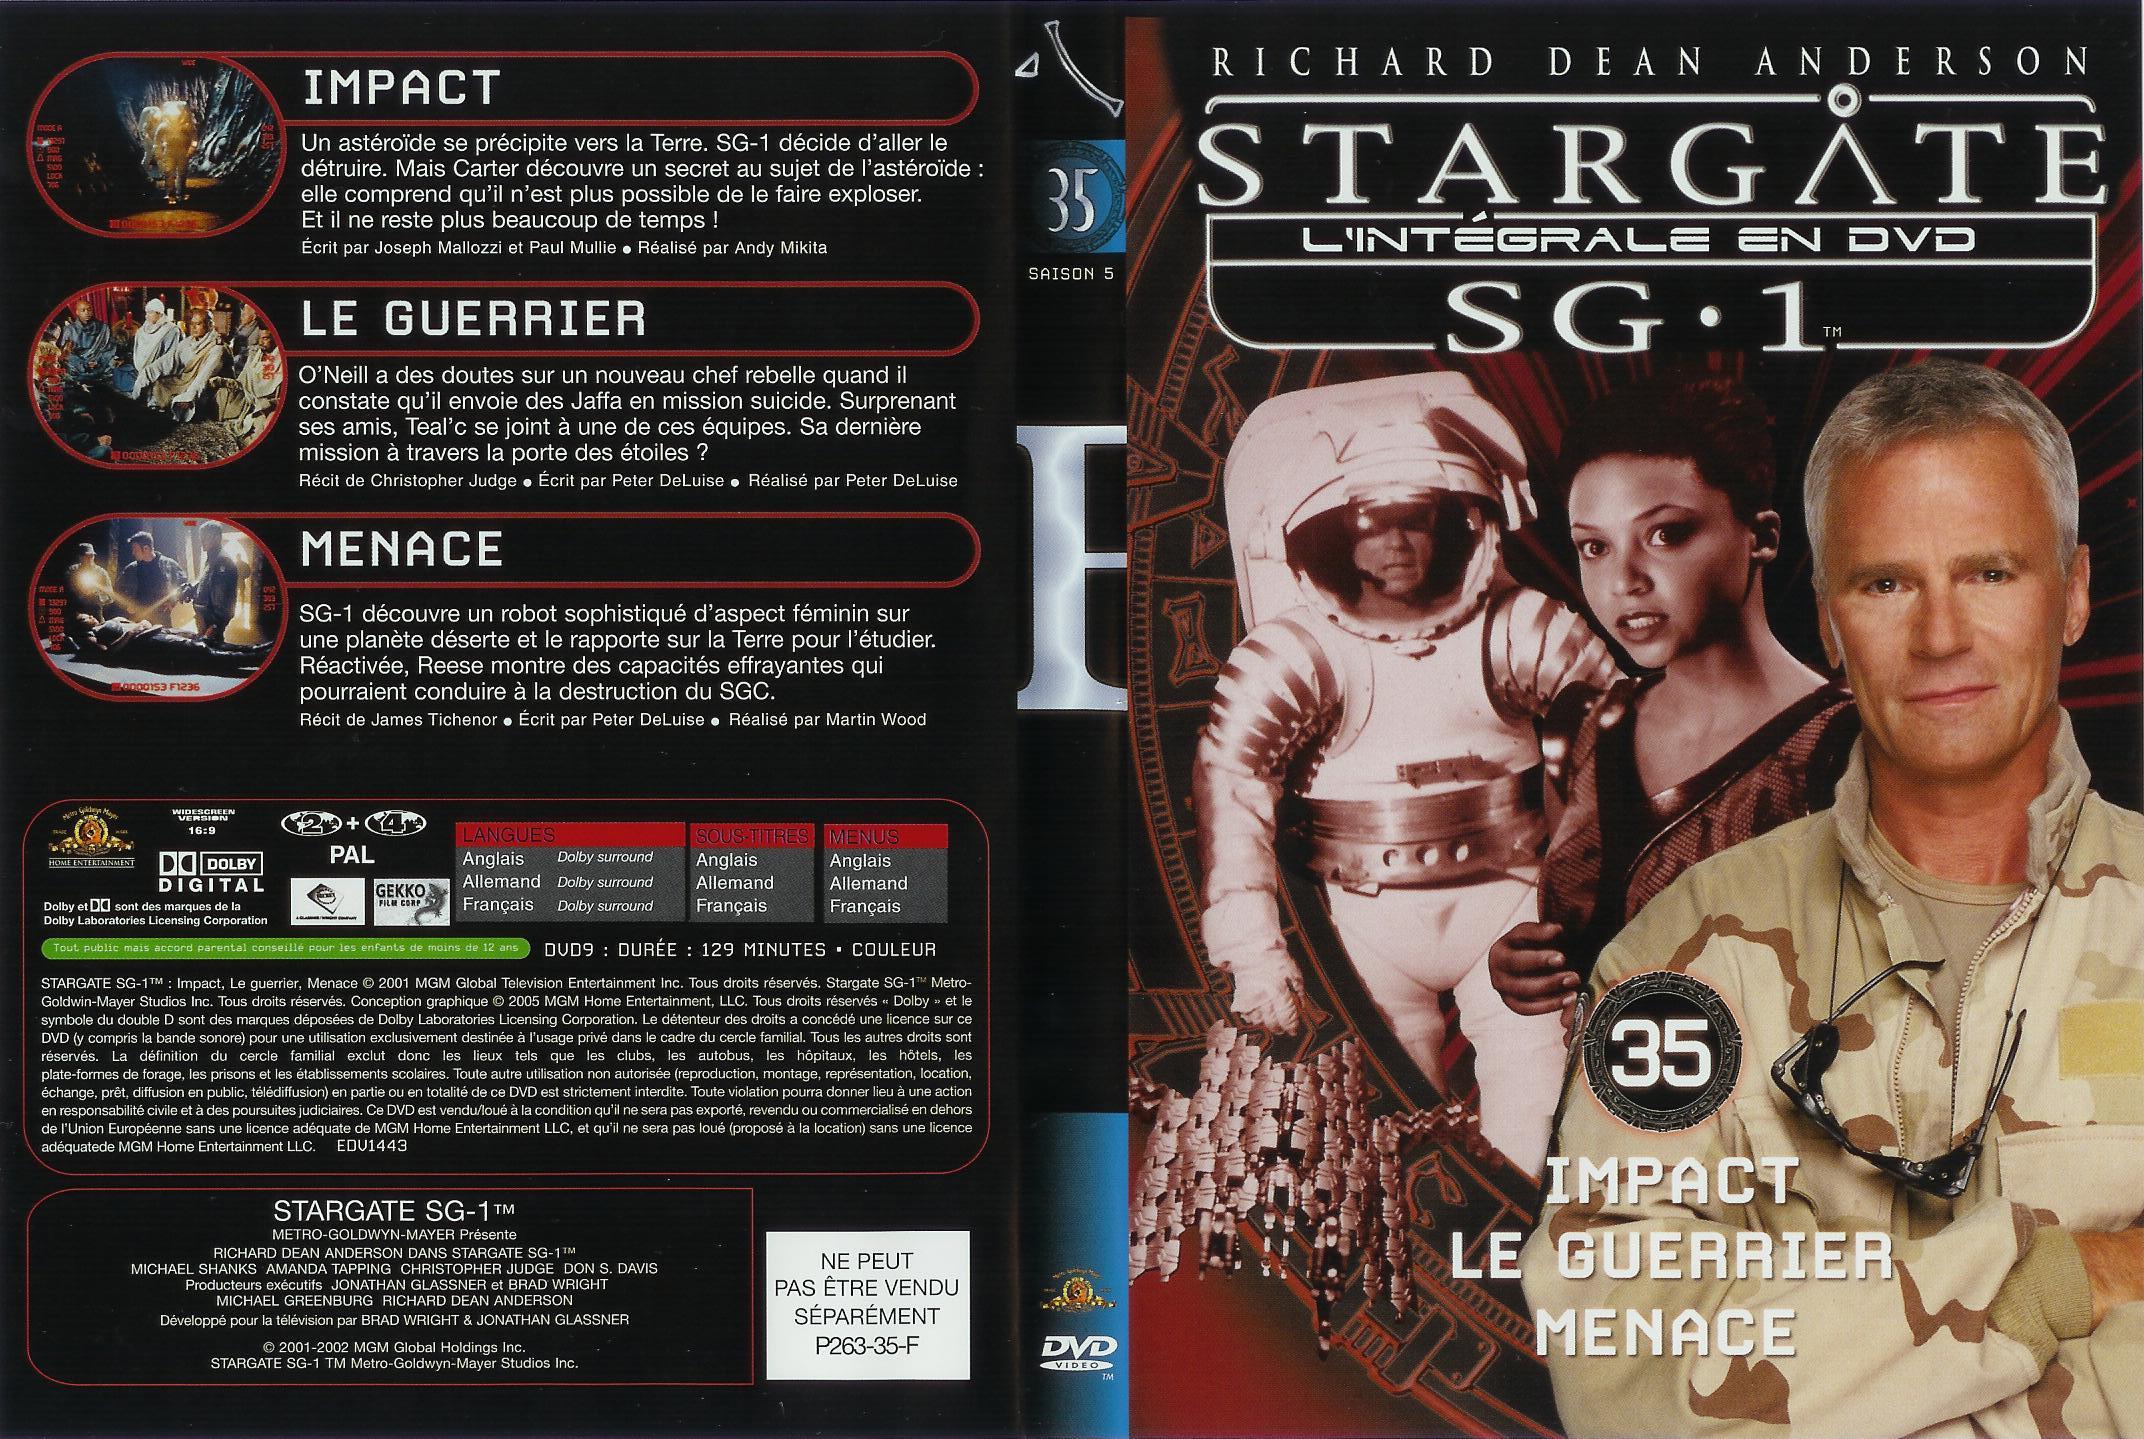 Jaquette DVD Stargate saison 5 vol 35